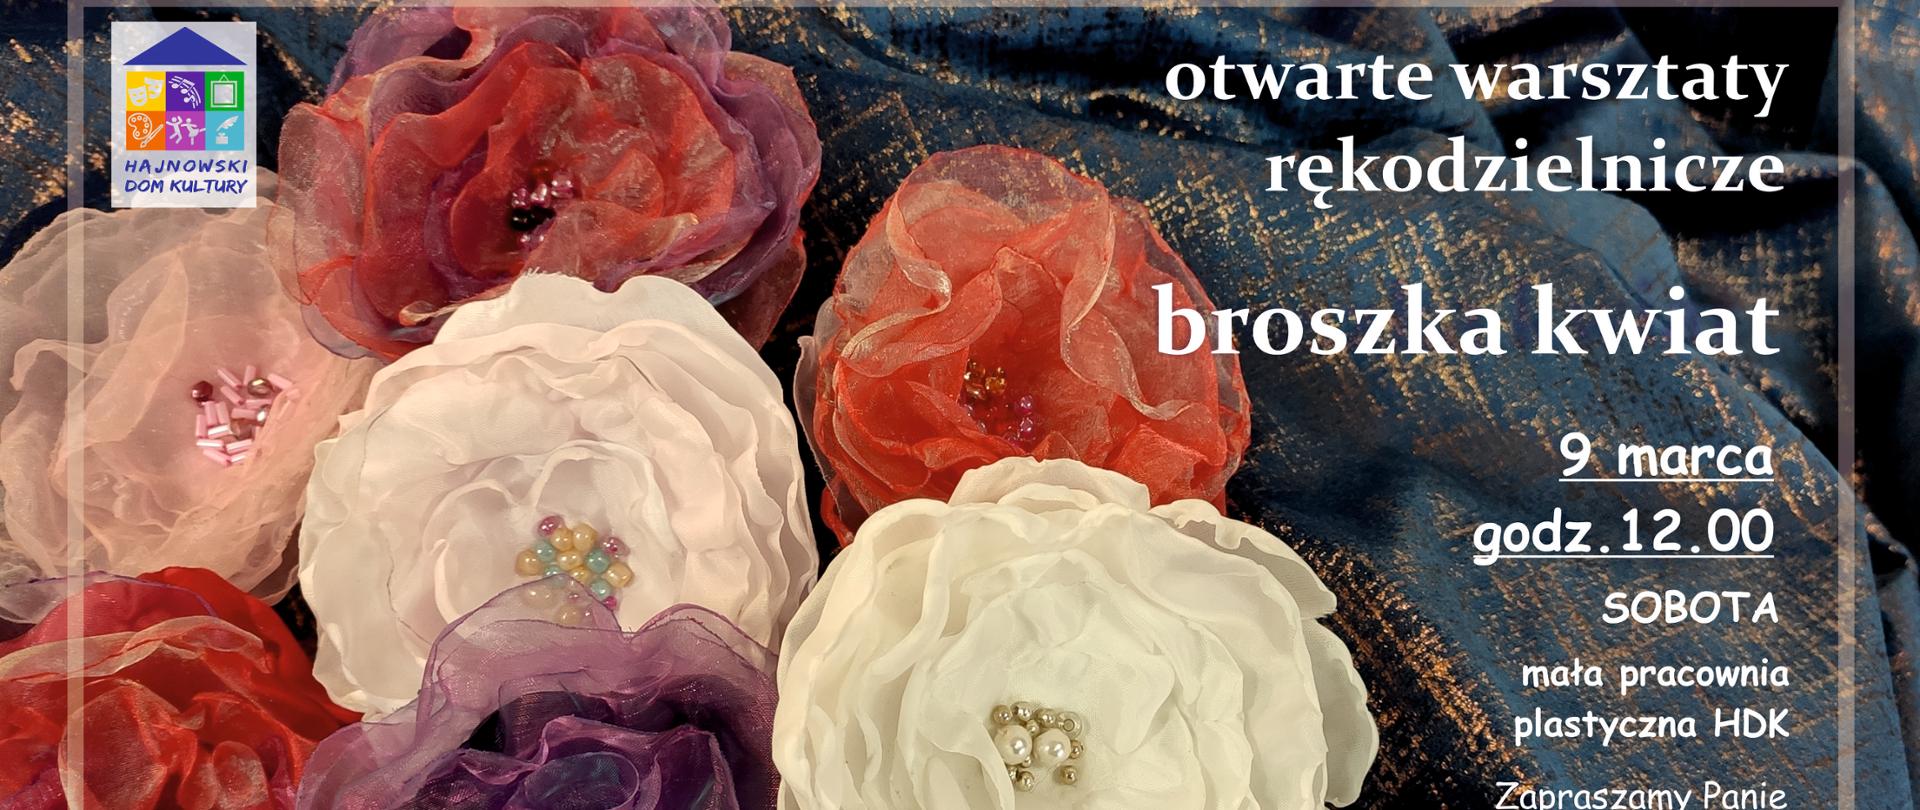 Obok zdjęcia 7 kolorowych broszek w kształcie kwiatów znajdują się informacje organizacyjne, zawarte w artykule